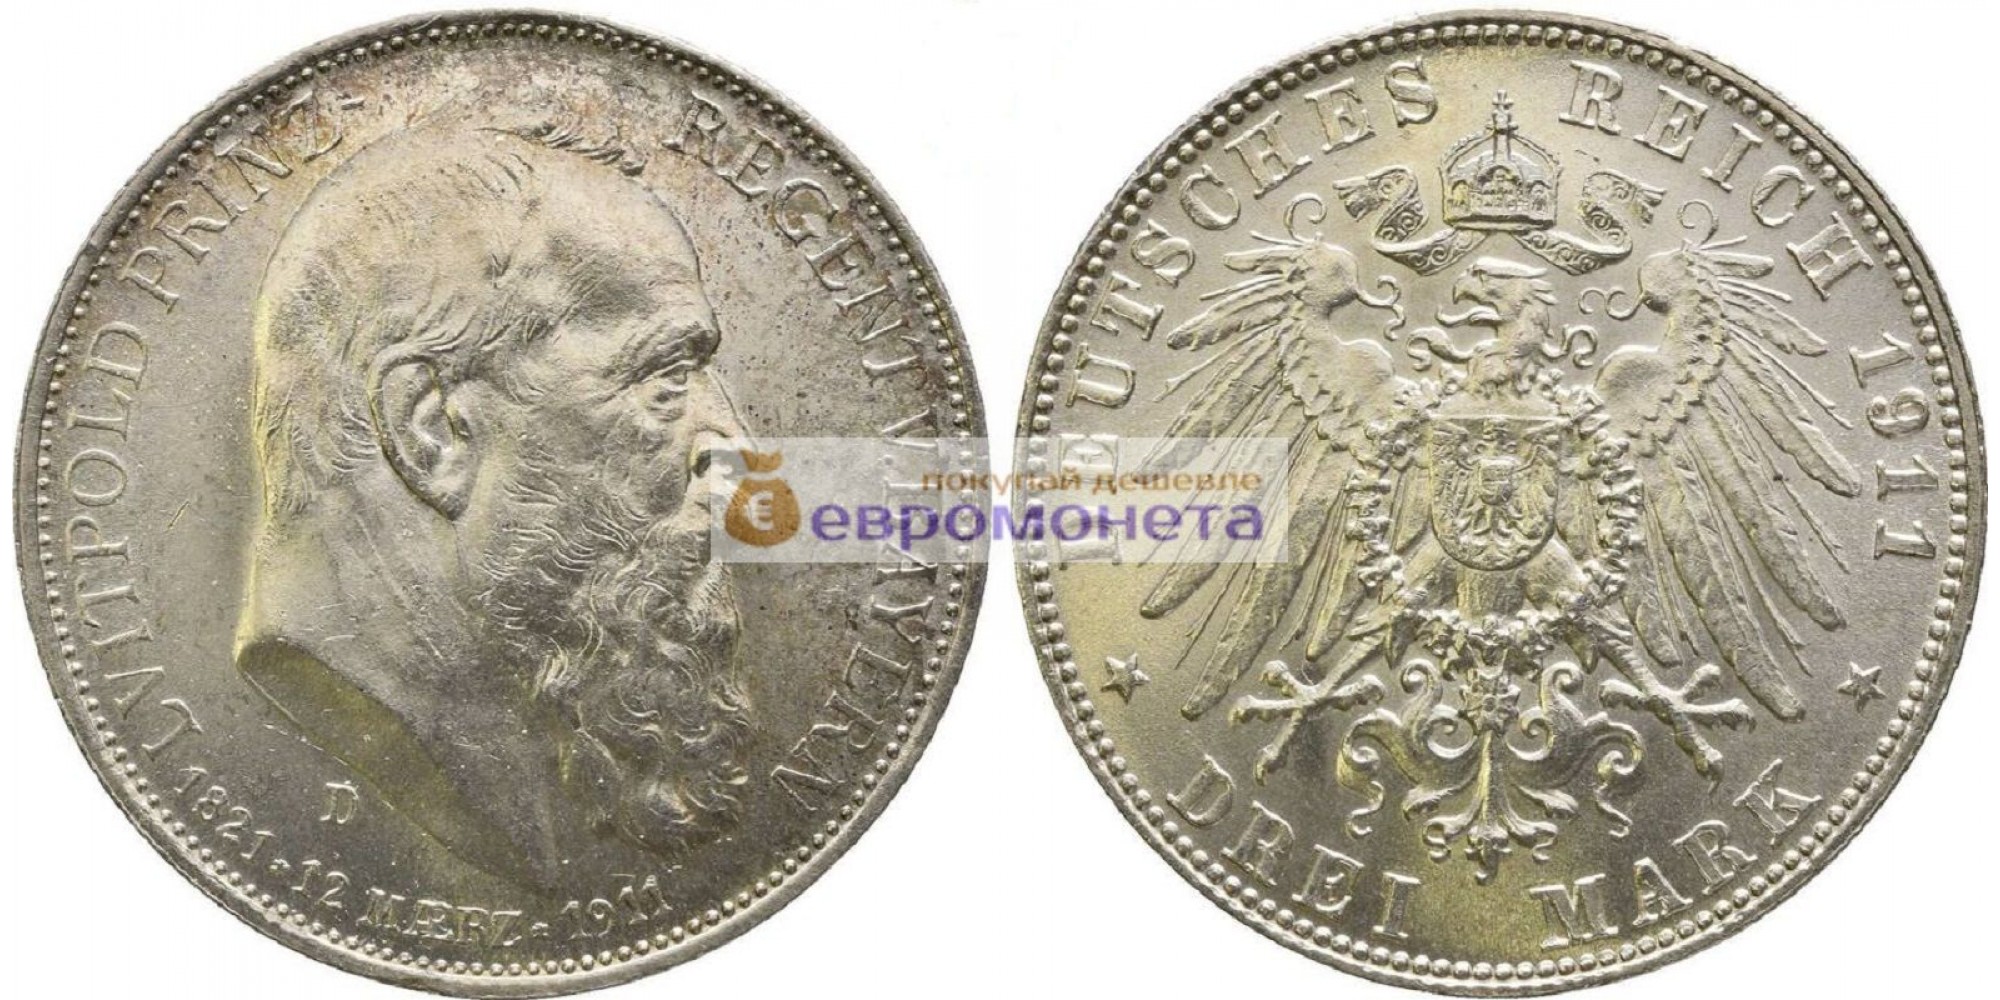 Германская империя Бавария 3 марки 1911 год "D" 90 лет со дня рождения Луитпольда Баварского. Серебро. АЦ / Unc